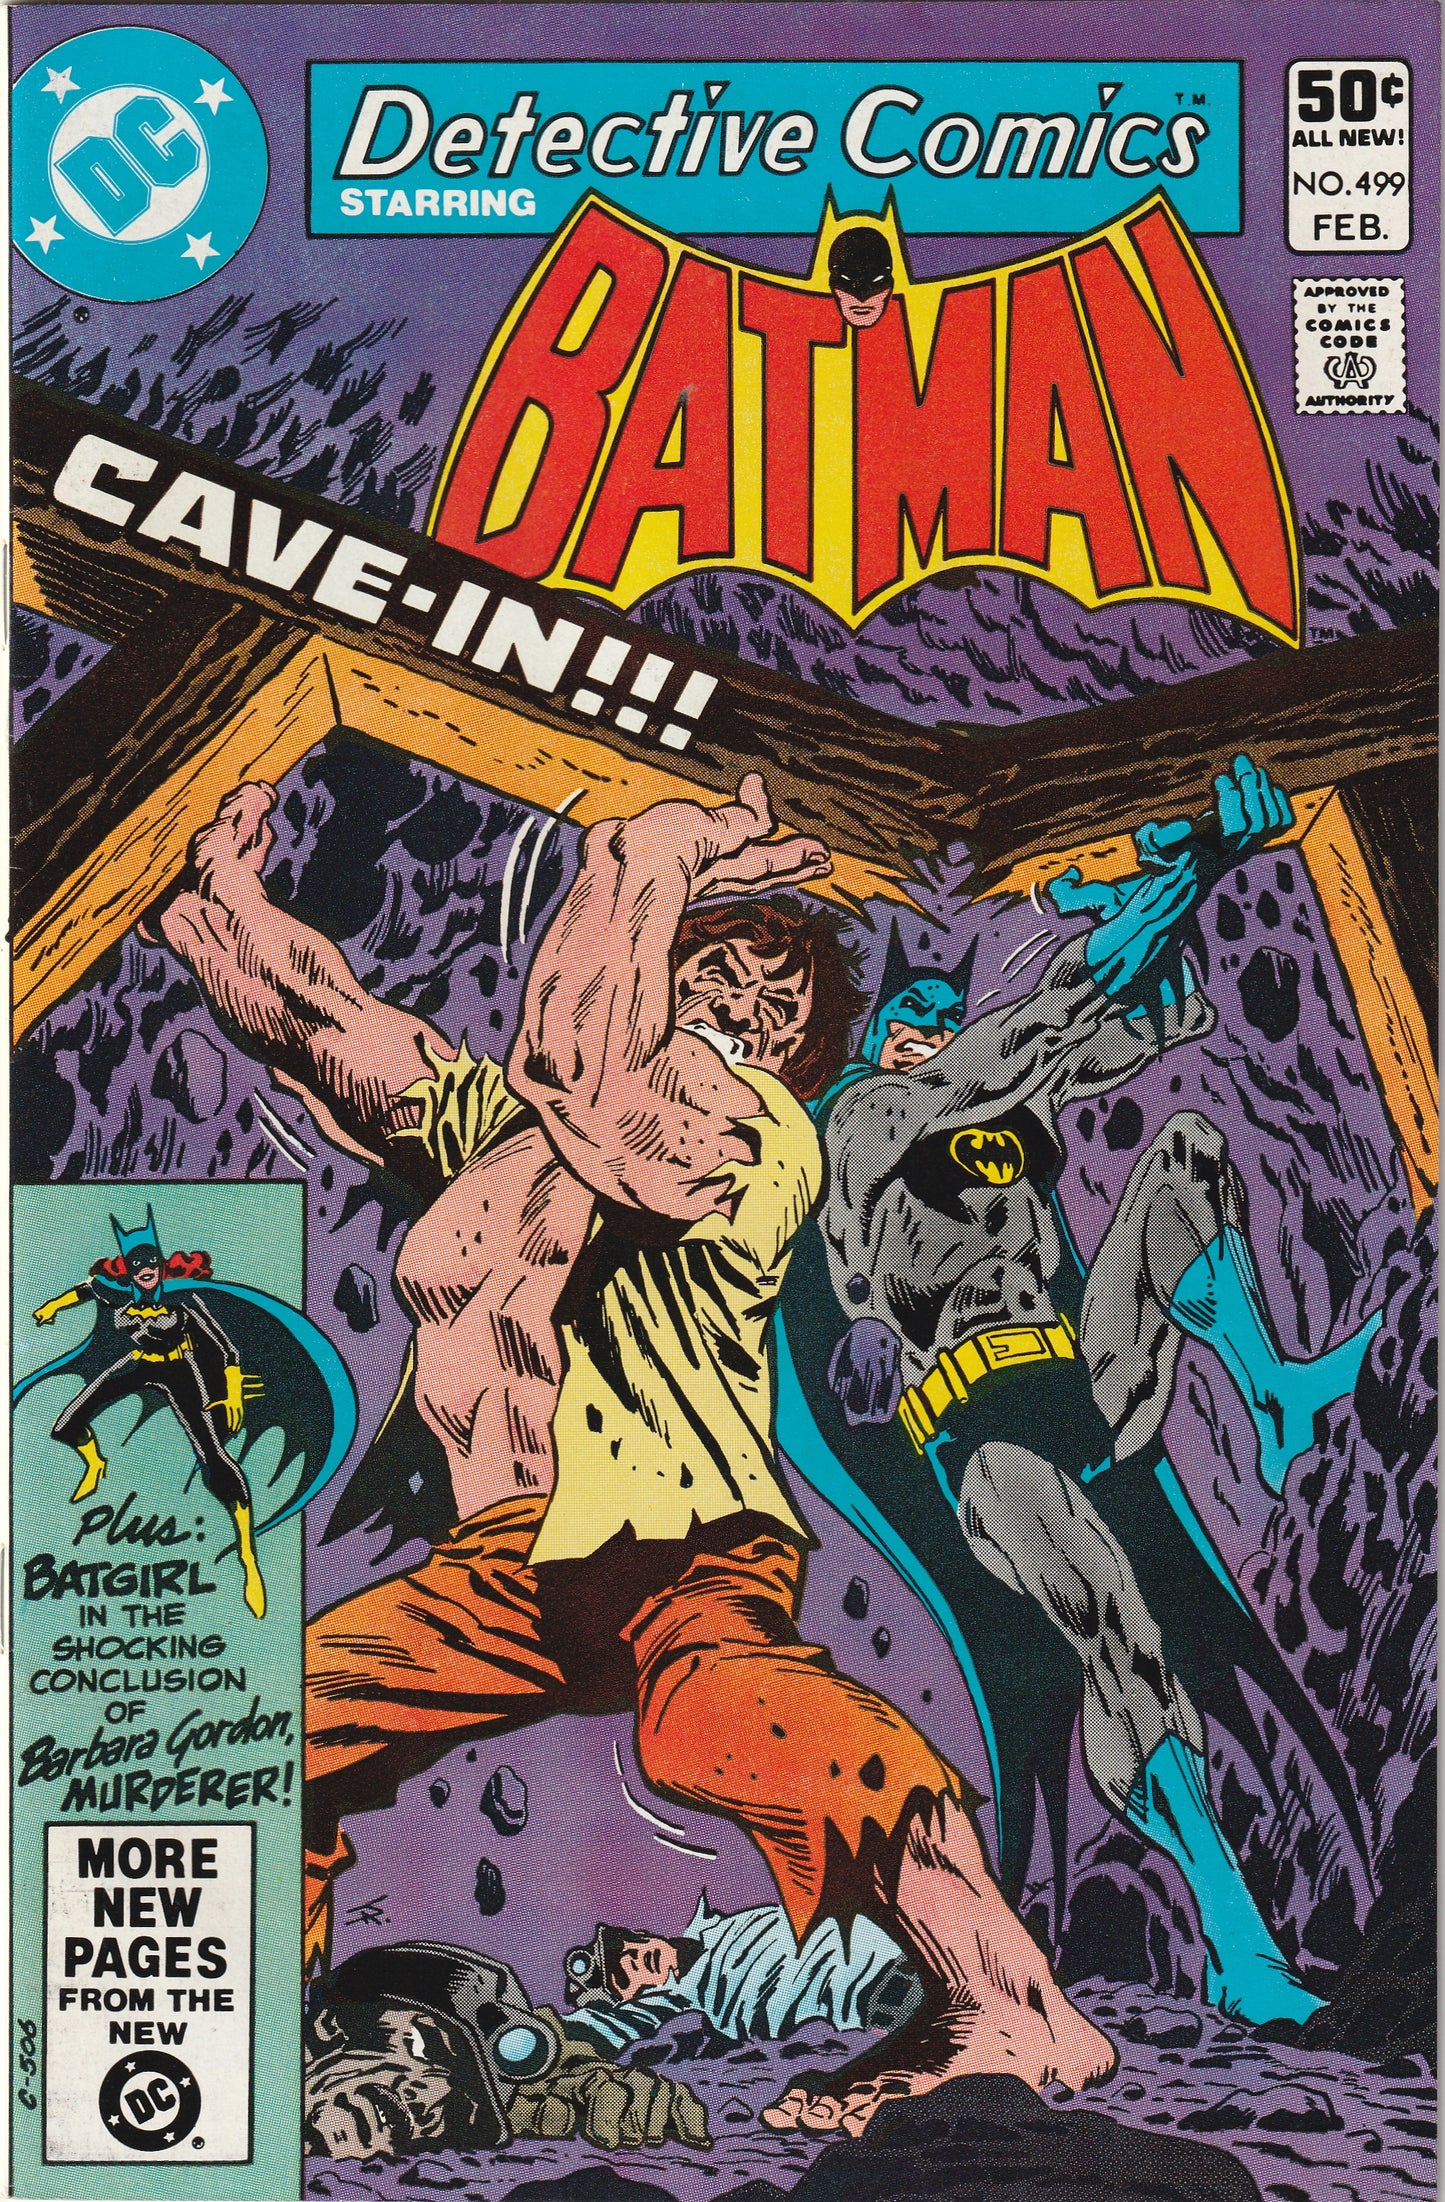 Detective Comics #499 (1981)